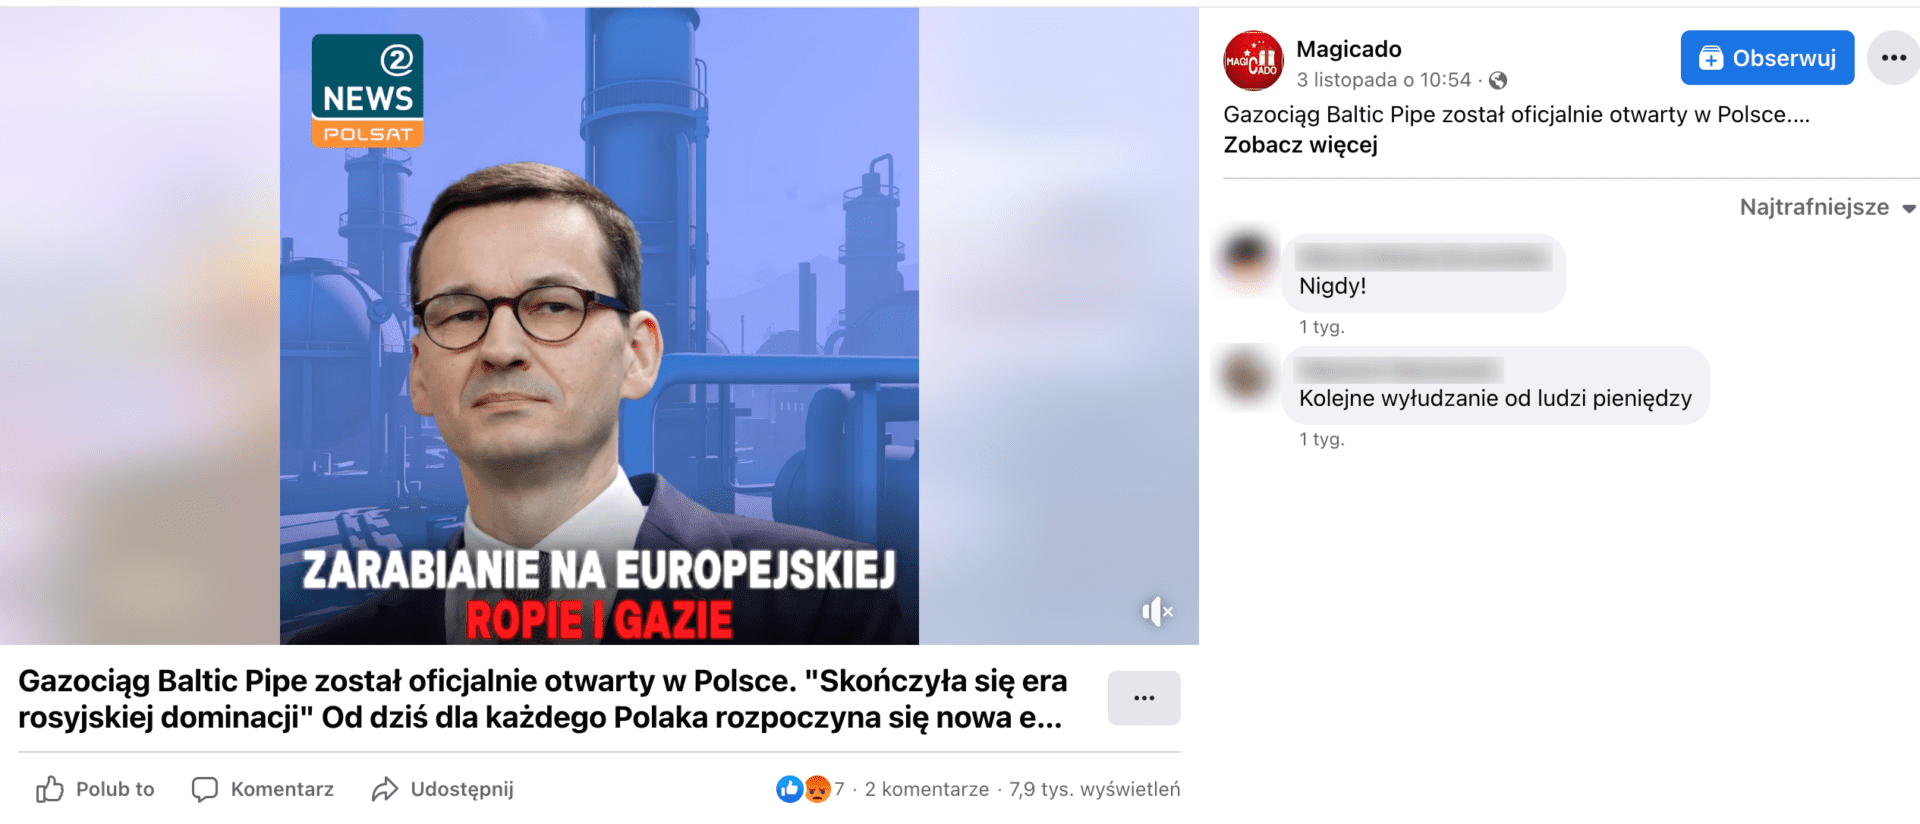 Zrzut ekranu omawianego posta na Facebooku. W kadrze znajduje się premier Mateusz Morawiecki na tle zakładu. W lewy górnym rogu umieszczono logo kanału Polsat News 2. U dołu napisano: „Zarabianie na europejskiej ropie i gazie”.